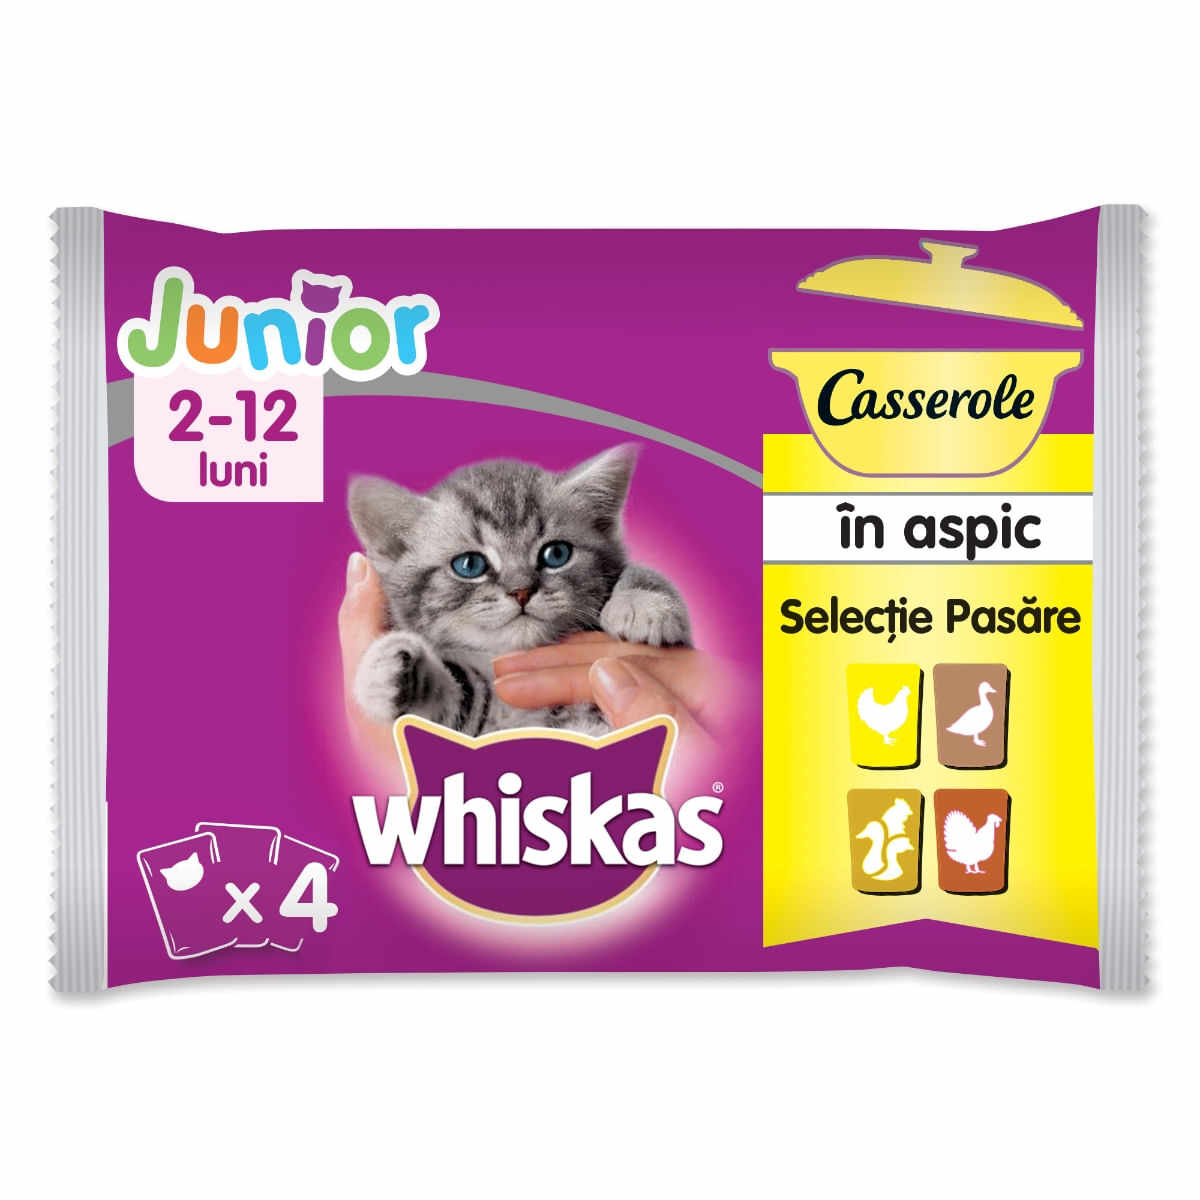 WHISKAS Casserole Selecții Pasăre Junior, 4 arome, pachet mixt, plic hrană umedă pisici junior, (în aspic), 85g x 4